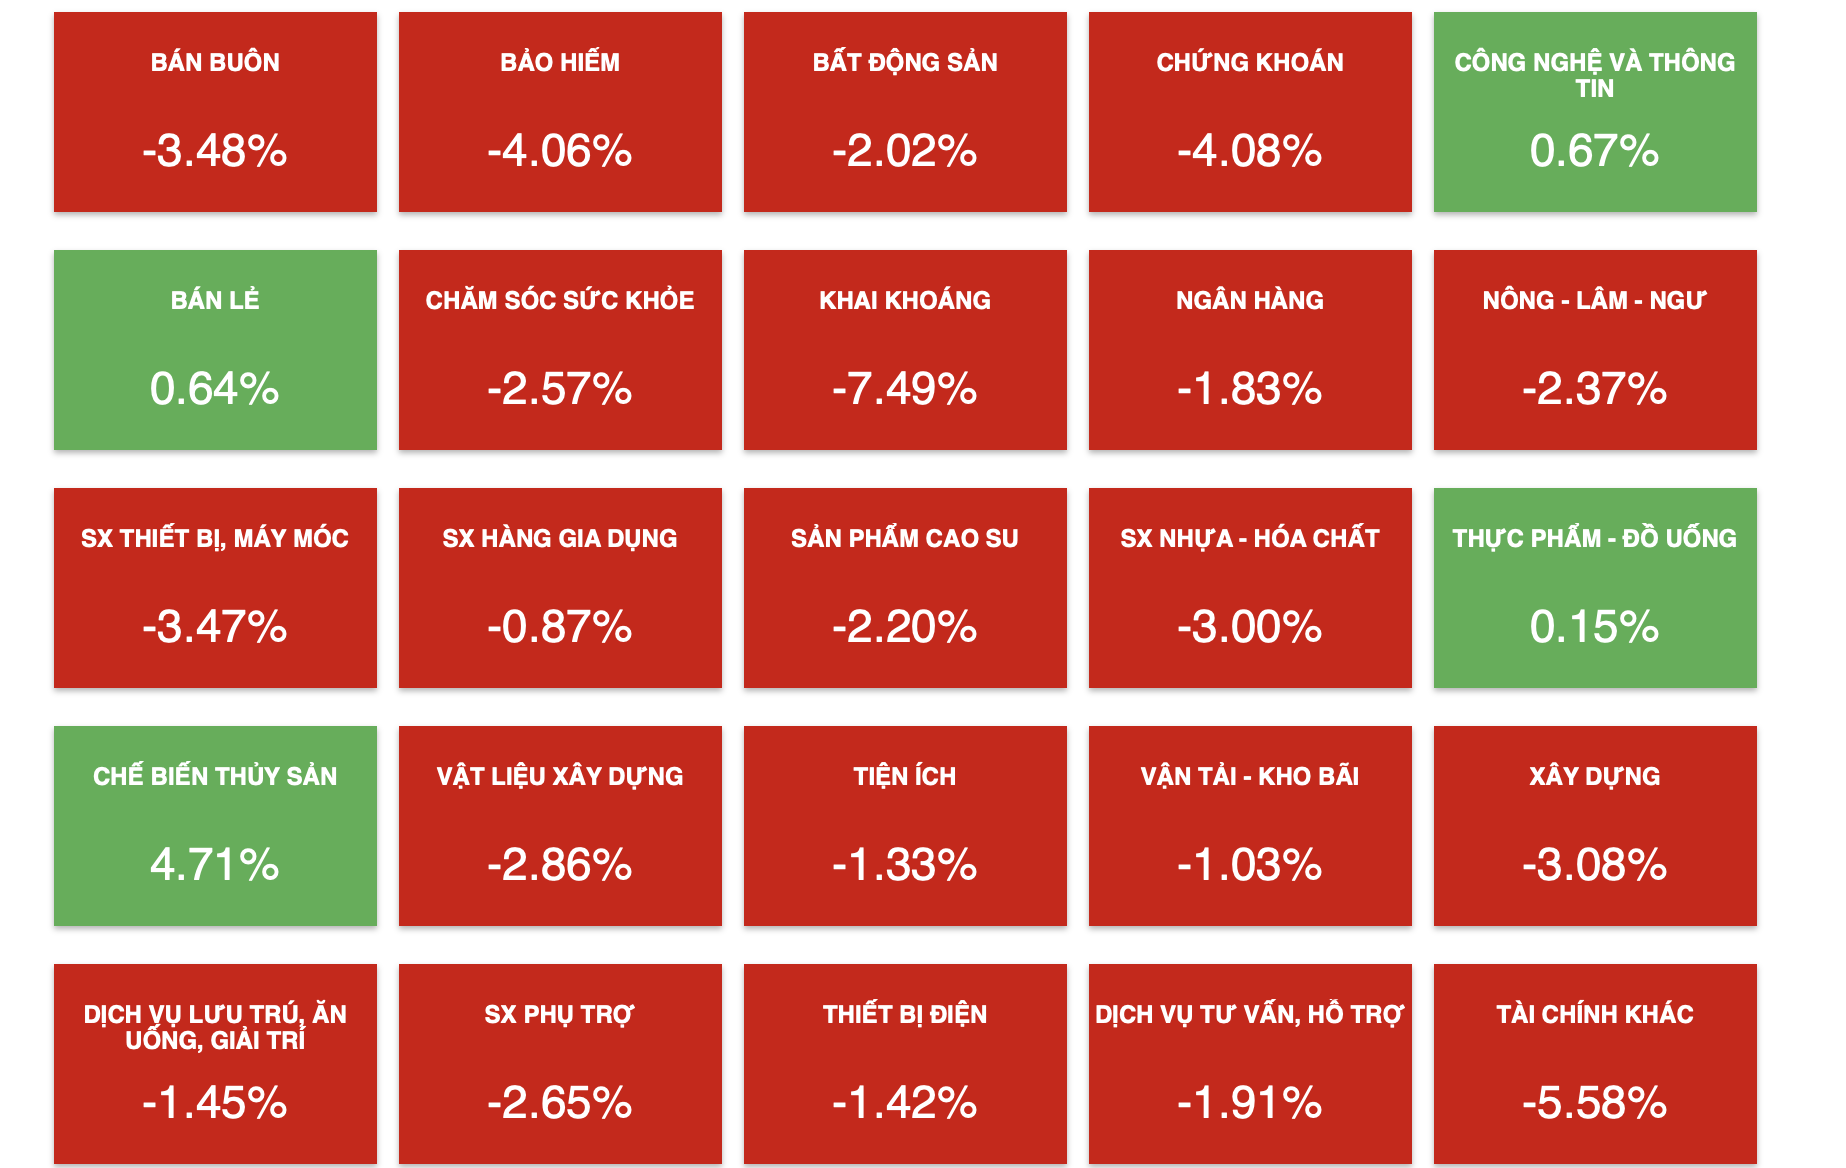 Diễn biến tiêu cực bao phủ lên hầu hết các nhóm cổ phiếu trong phiên hôm nay 12.4. Ảnh chụp màn hình